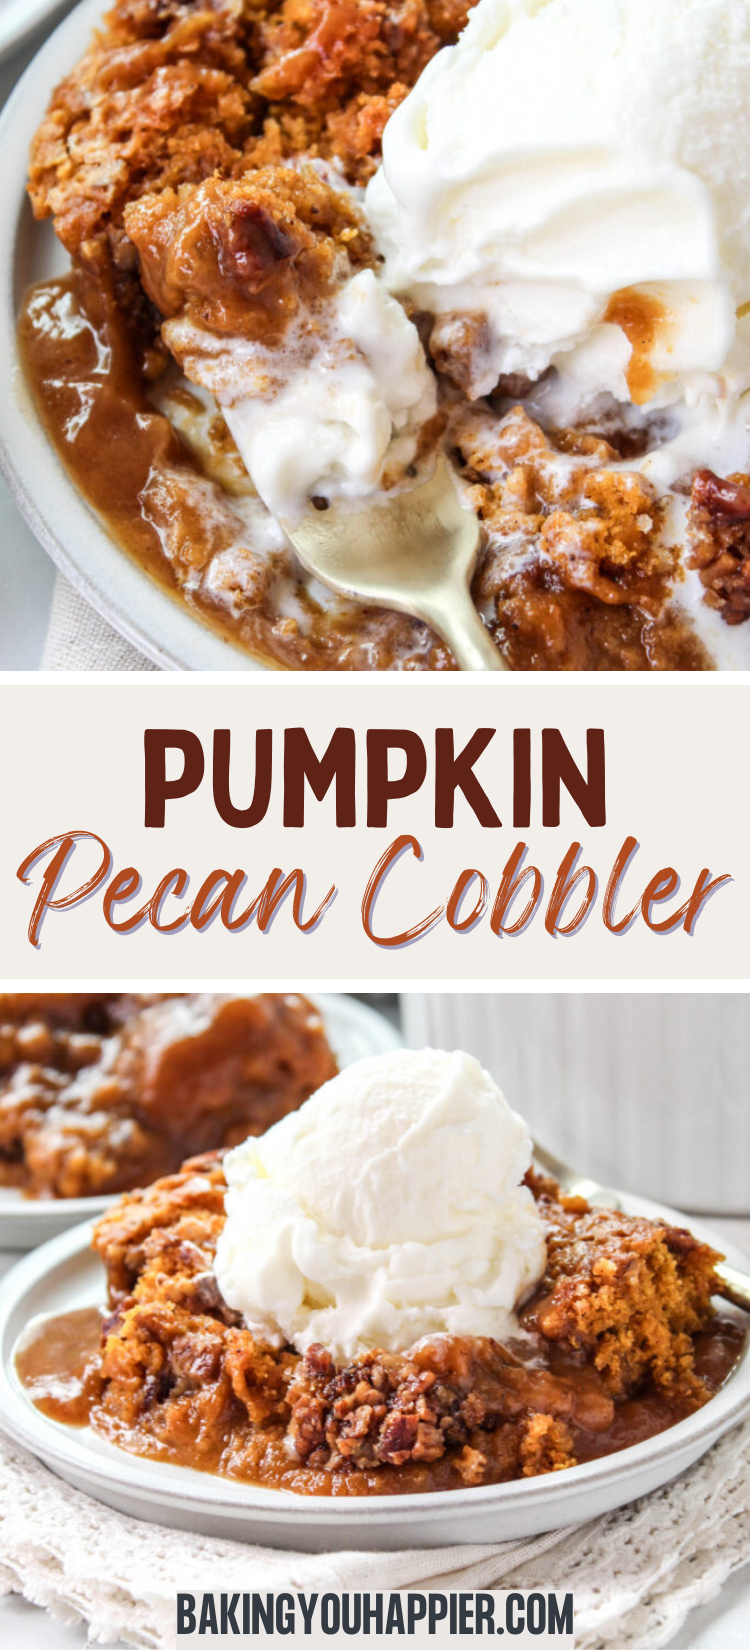 Pumpkin Pecan Cobbler - Baking You Happier